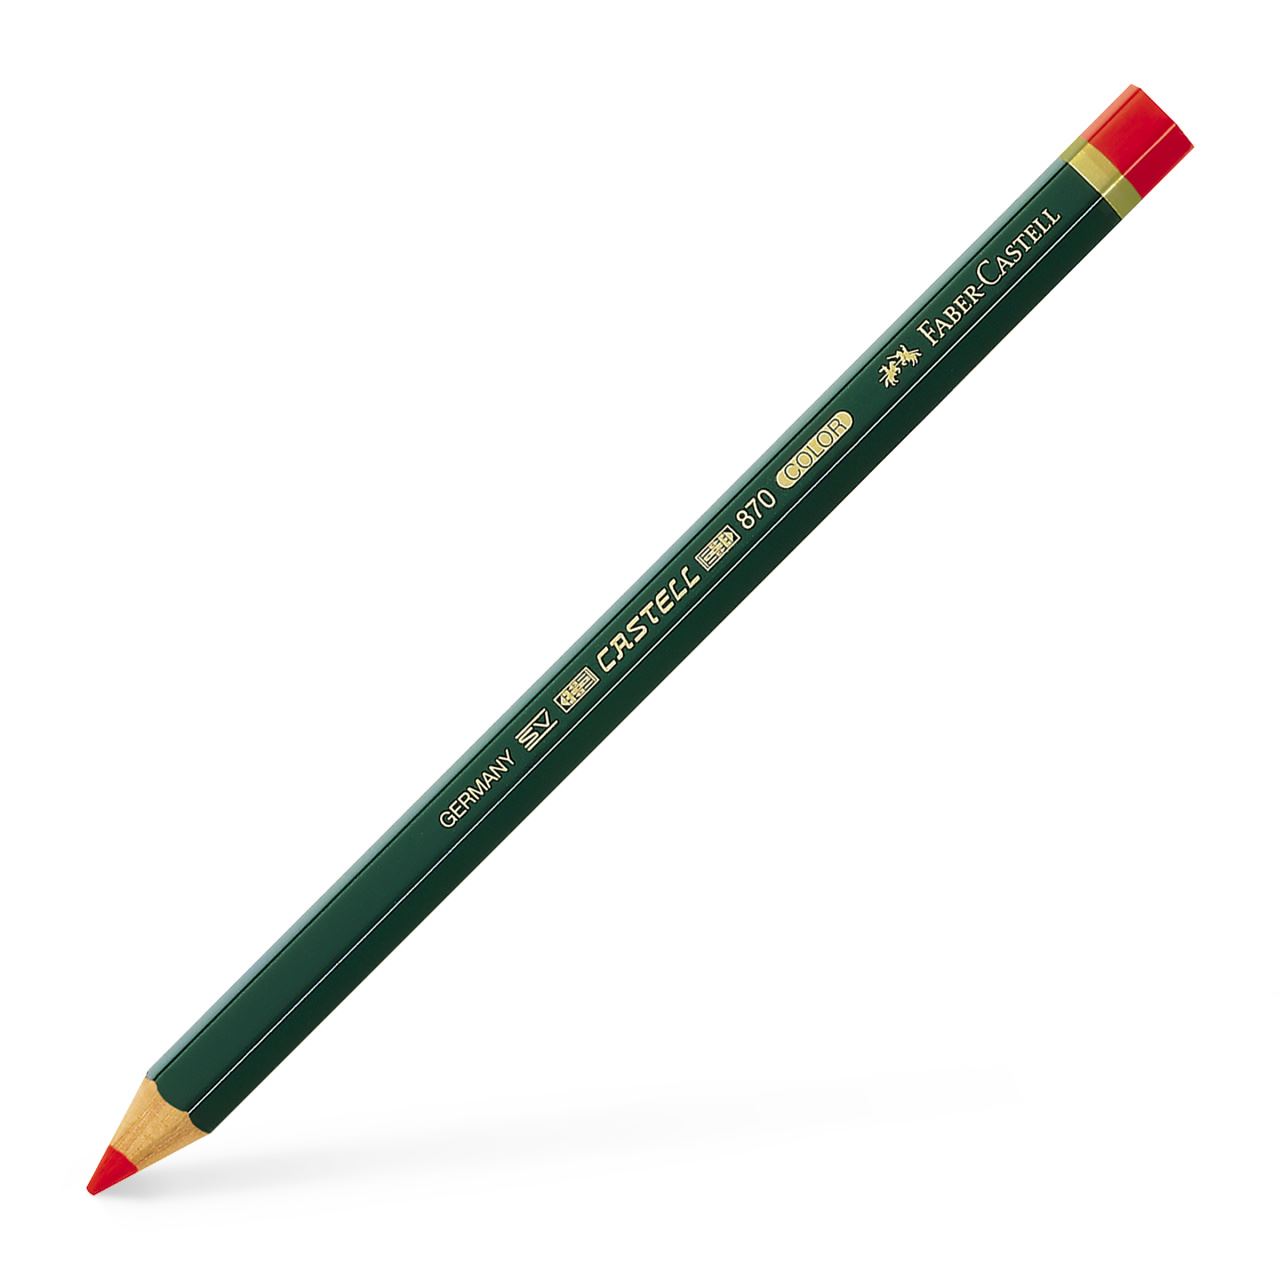 Faber-Castell - Crayon de coul. Castell Color 870 rouge